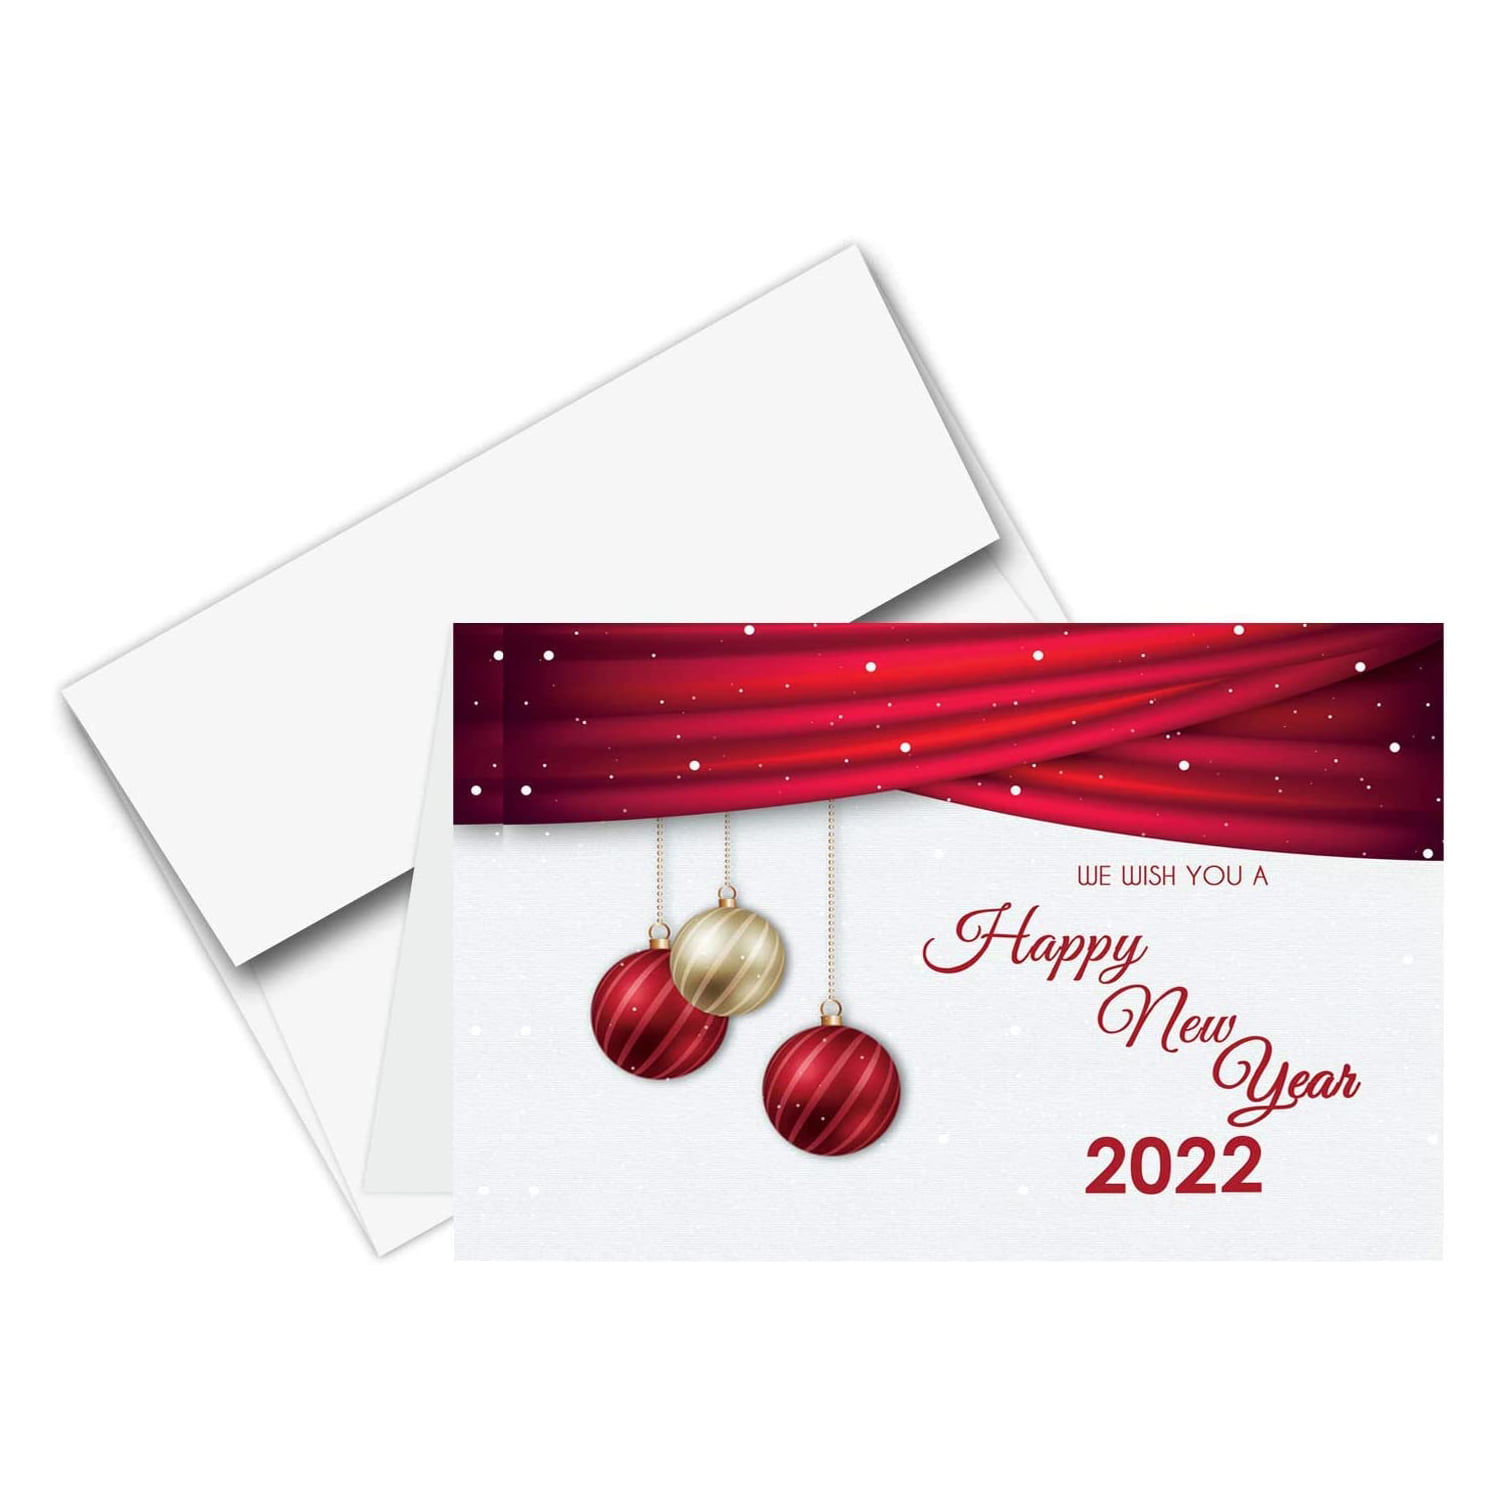 Holidays Navidad Greeting Xmas 20 Christmas Cards and Envelopes New Boxed 